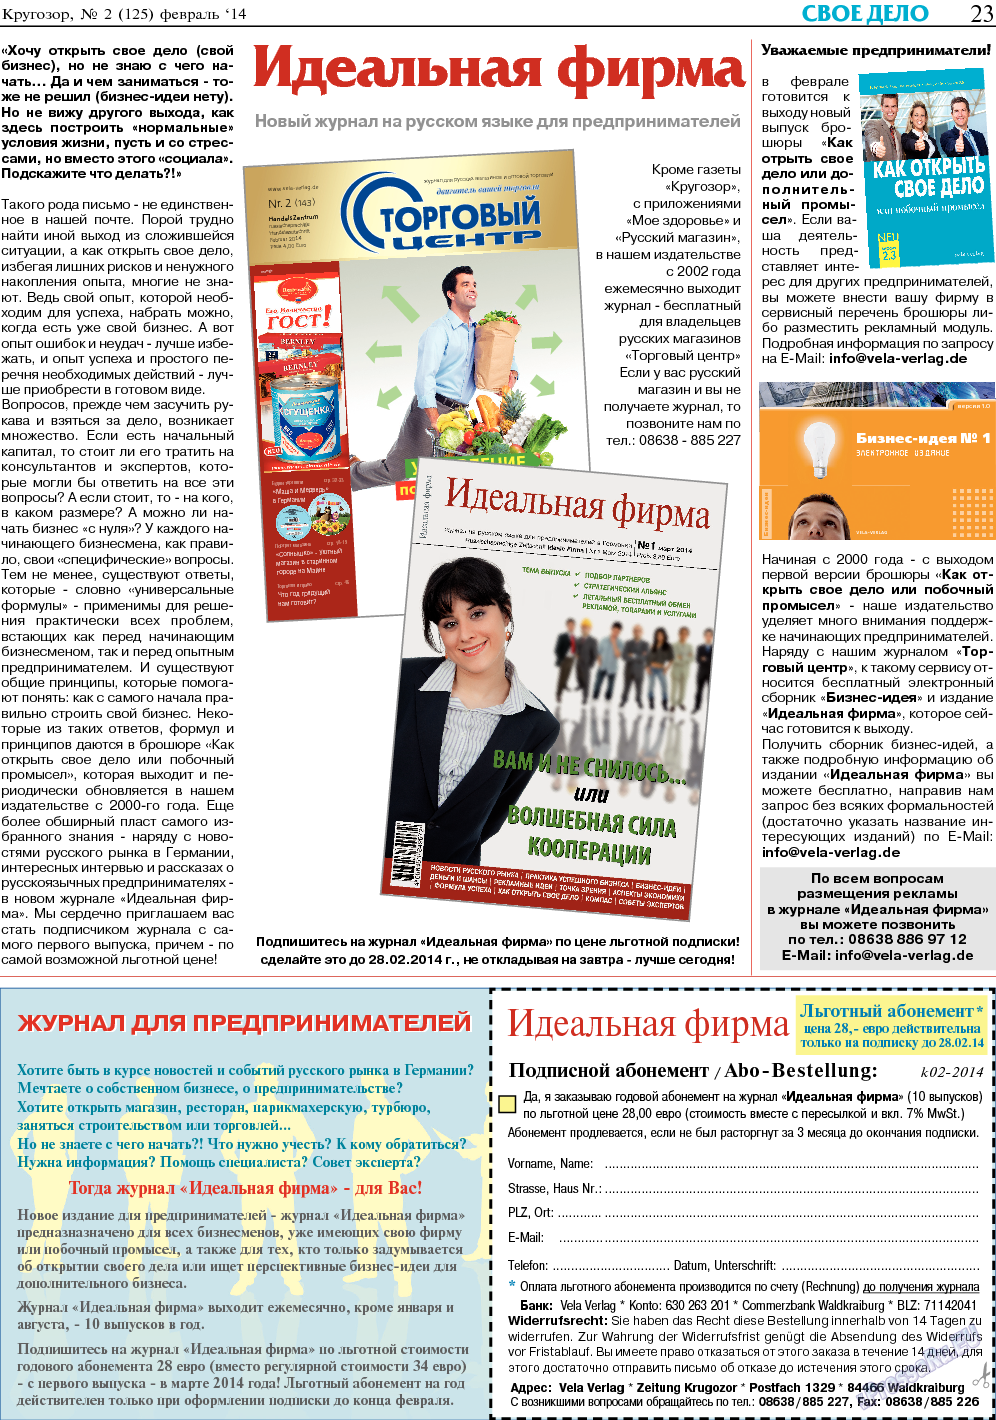 Кругозор, газета. 2014 №2 стр.23